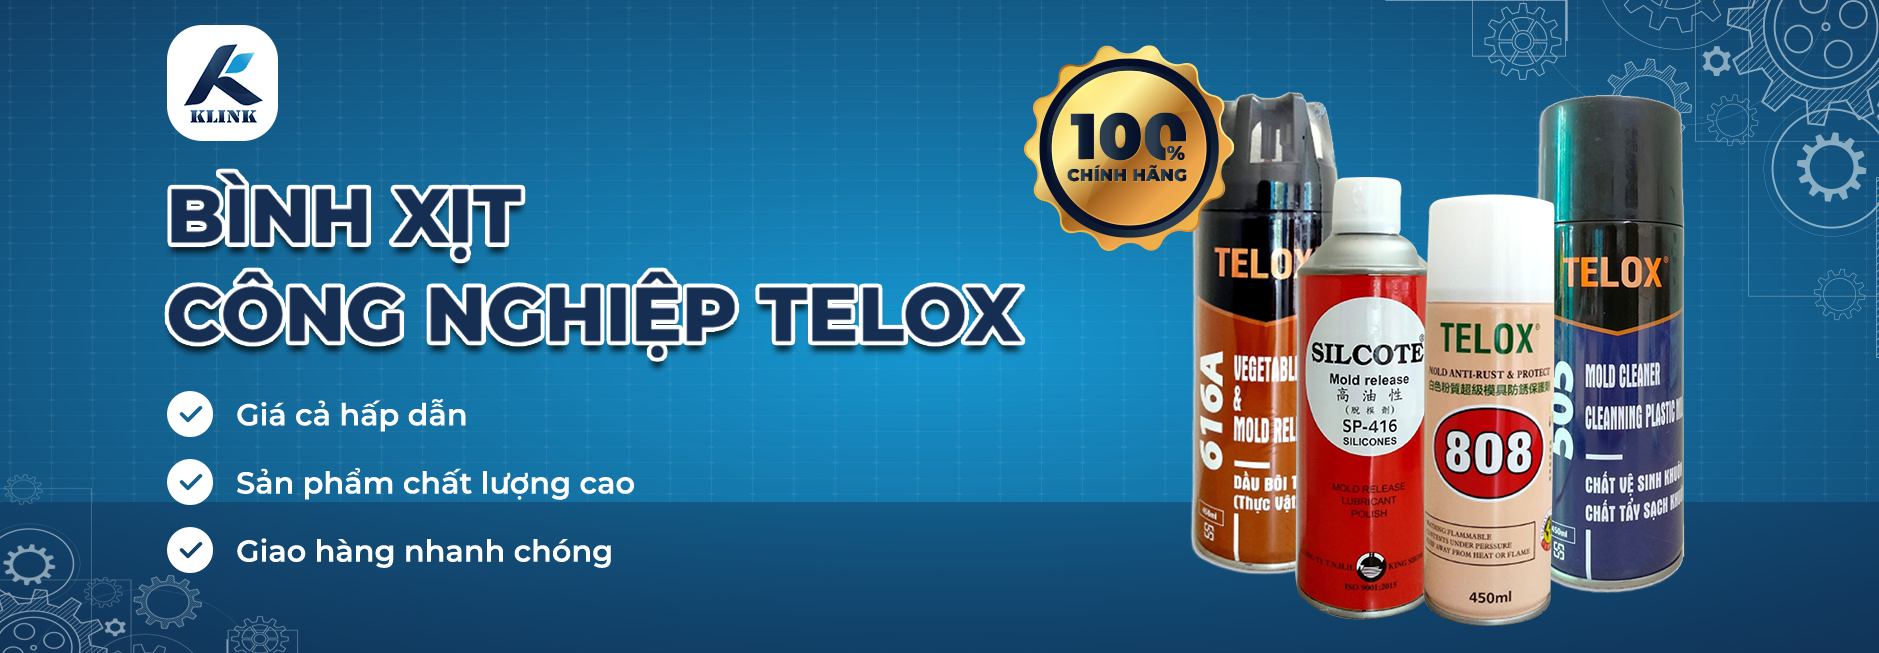 Bình xịt thương hiệu Telox